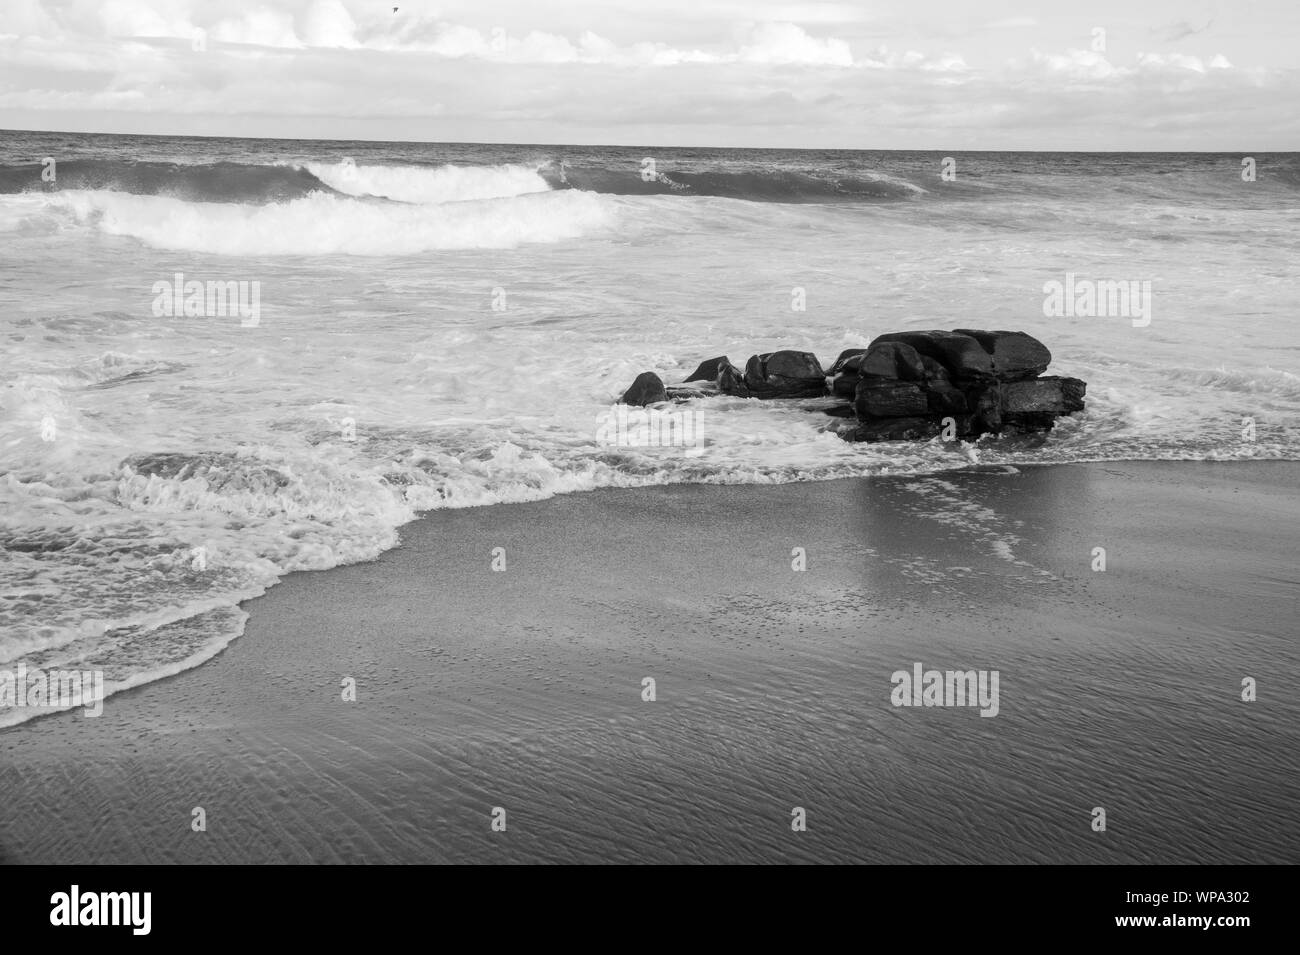 Un bel bianco e nero seascape con serena e spumeggianti acque. Le onde si infrangono contro una roccia nel tardo pomeriggio. Foto Stock